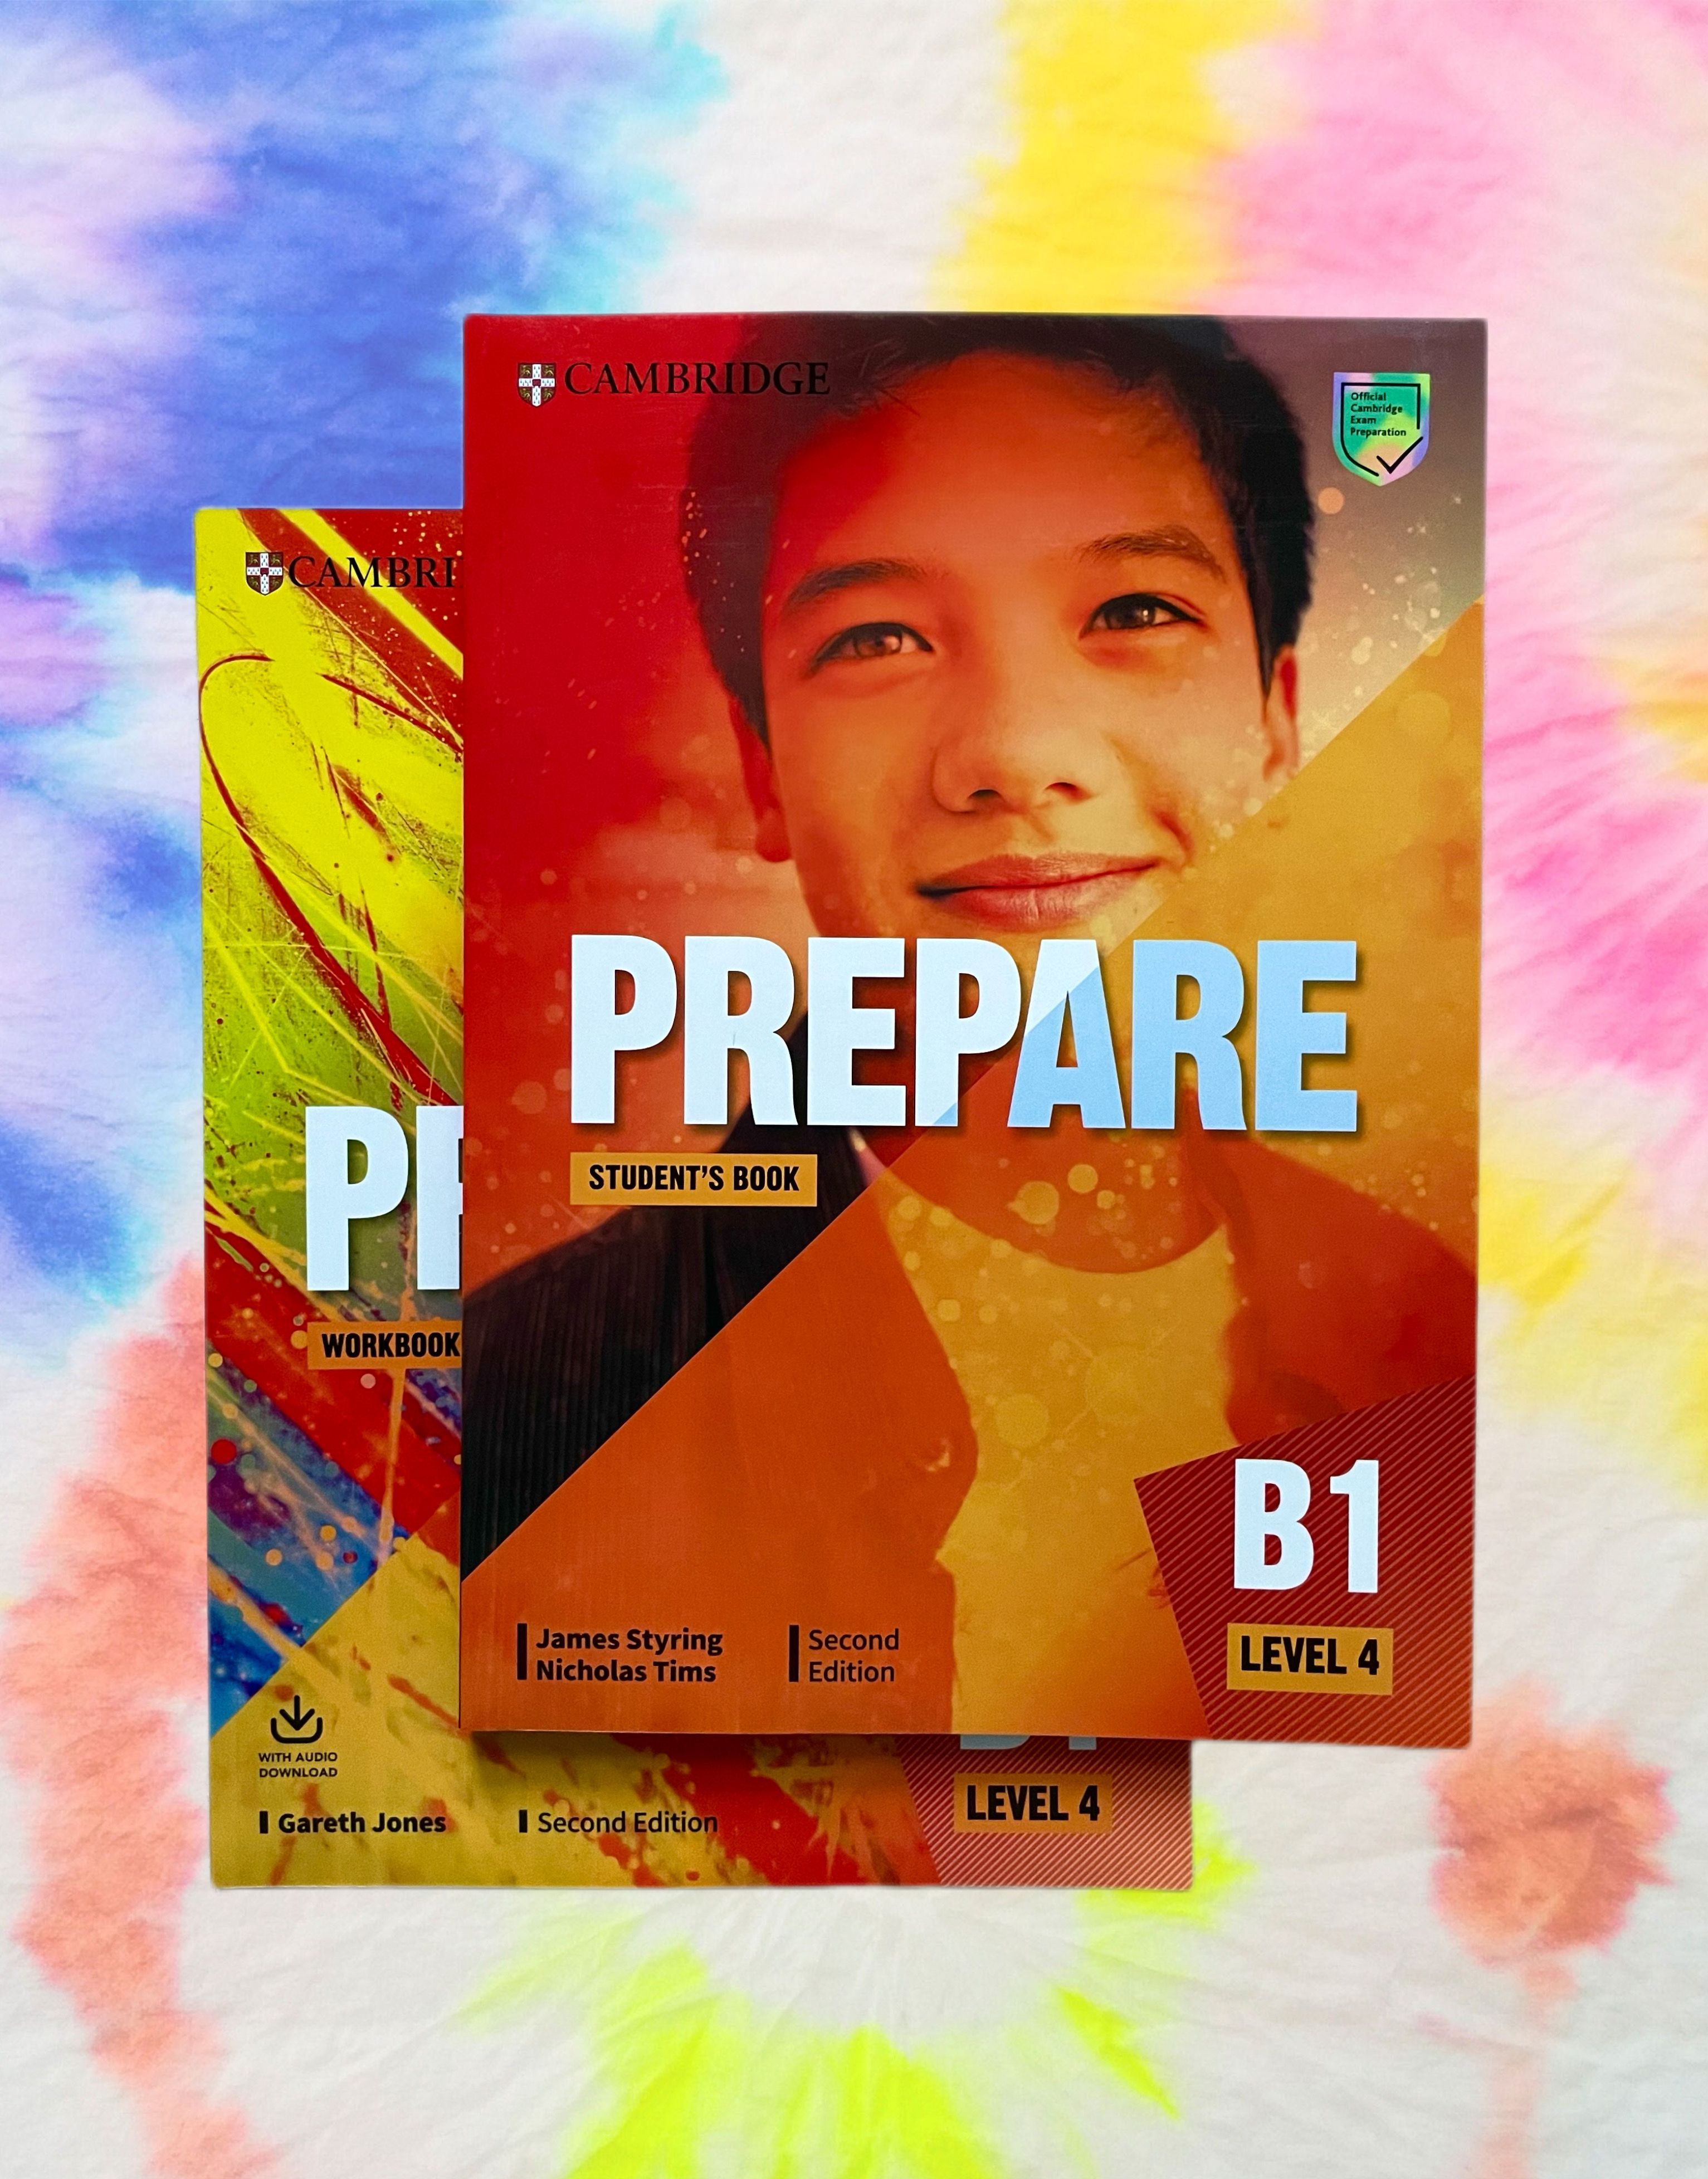 Prepare level 4. Prepare учебник. Prepare учебник английского. Учебник prepare 4. Prepare Level 4 student's book.